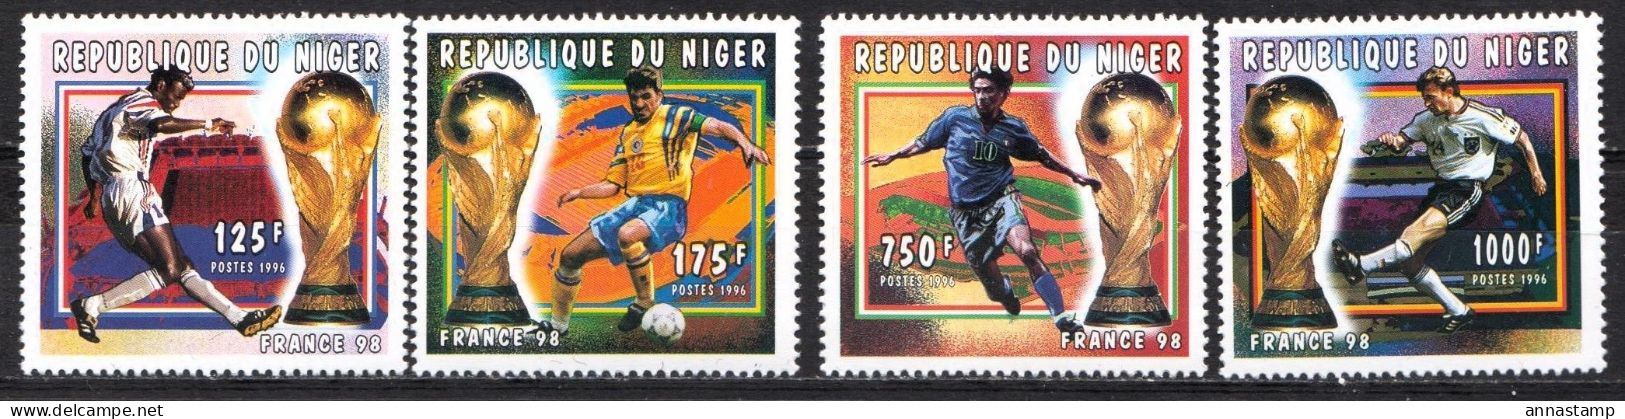 Niger MNH Set - 1998 – Francia